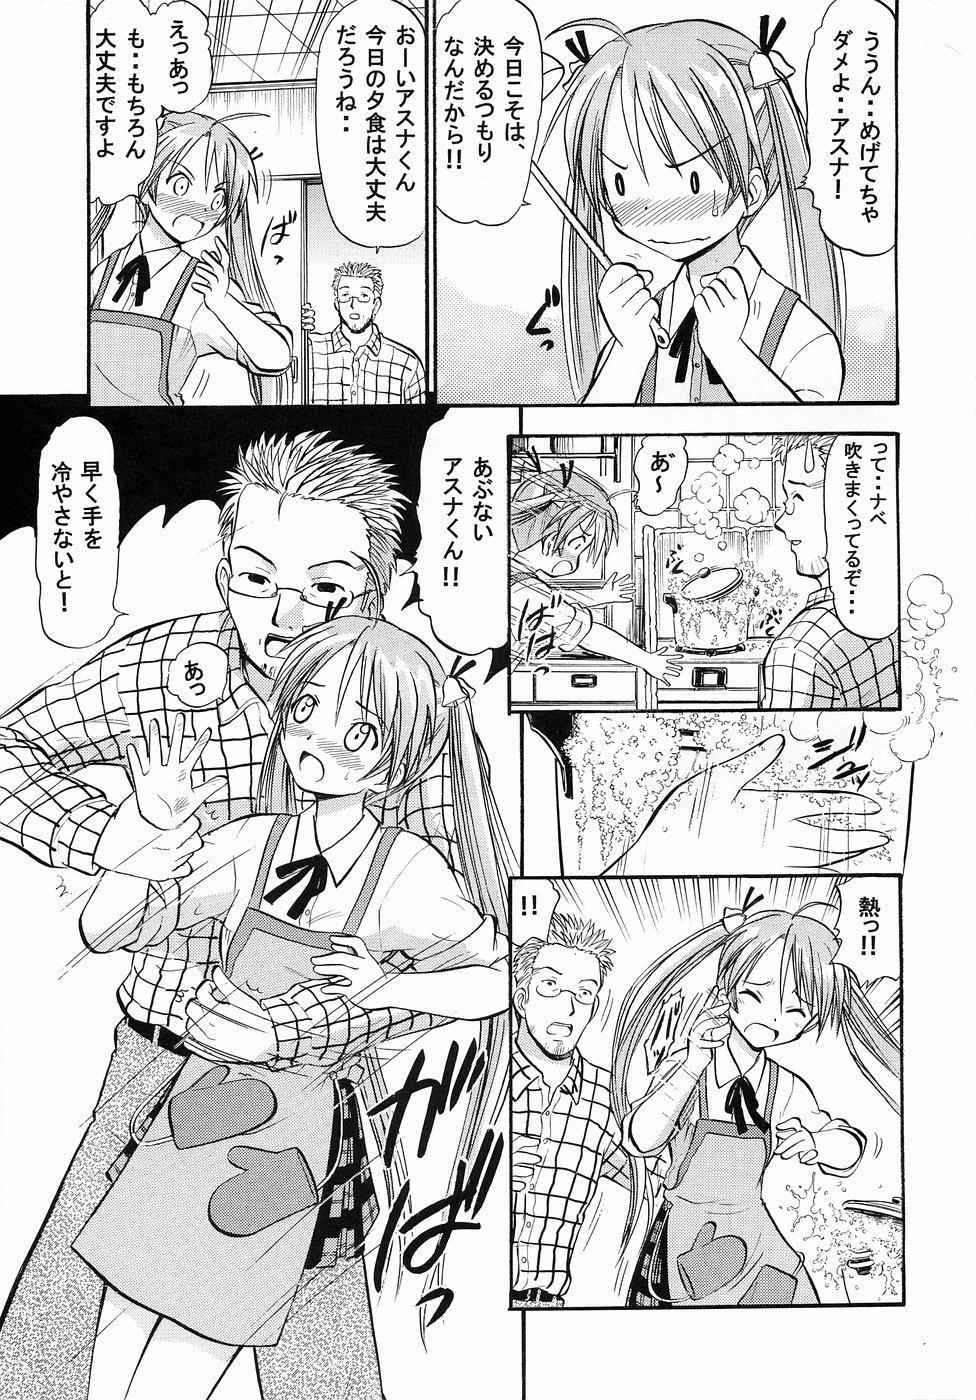 Relax Asuna no Koi Suru Heart - Mahou sensei negima Tributo - Page 4